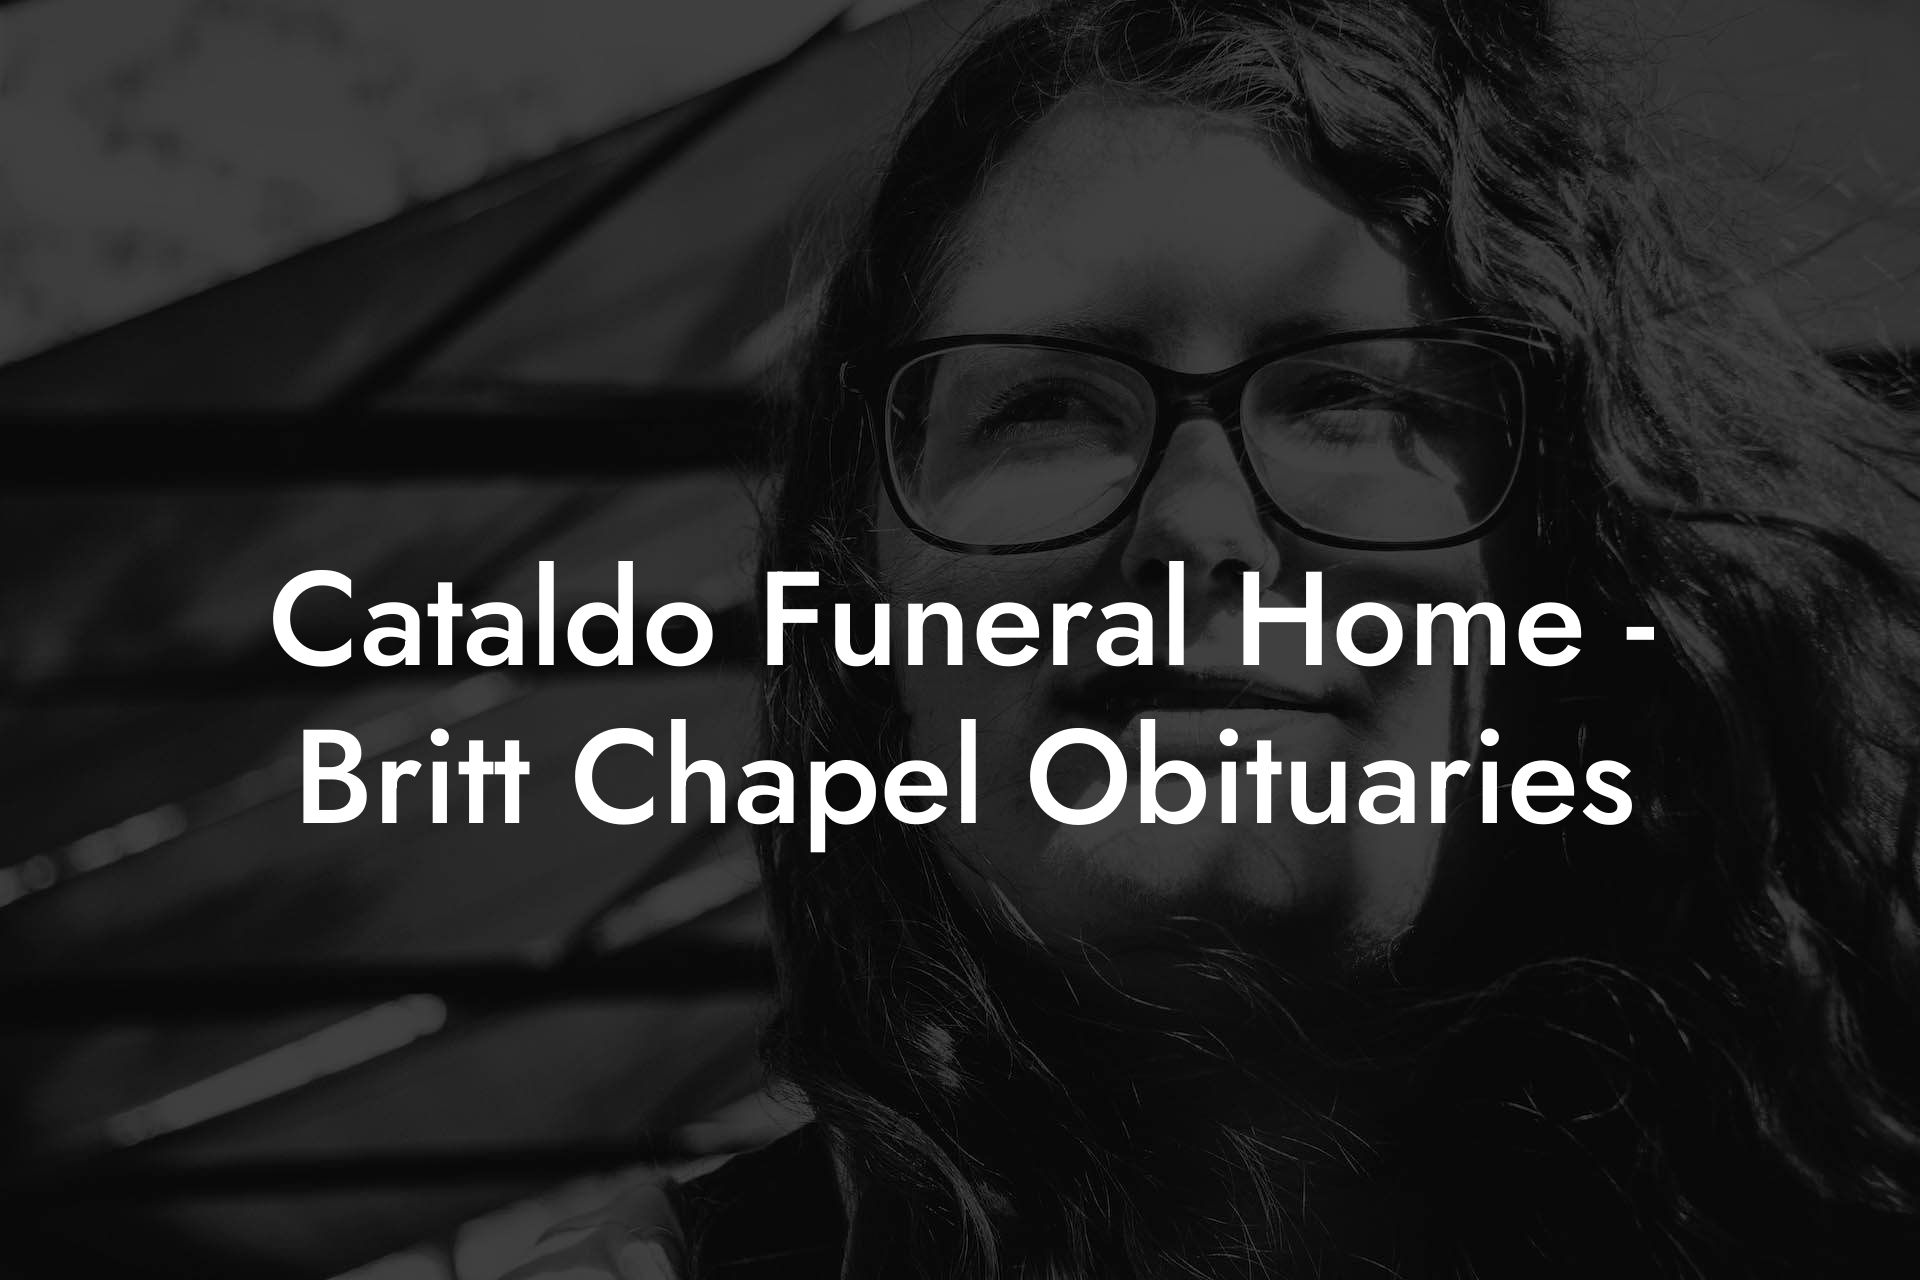 Cataldo Funeral Home - Britt Chapel Obituaries